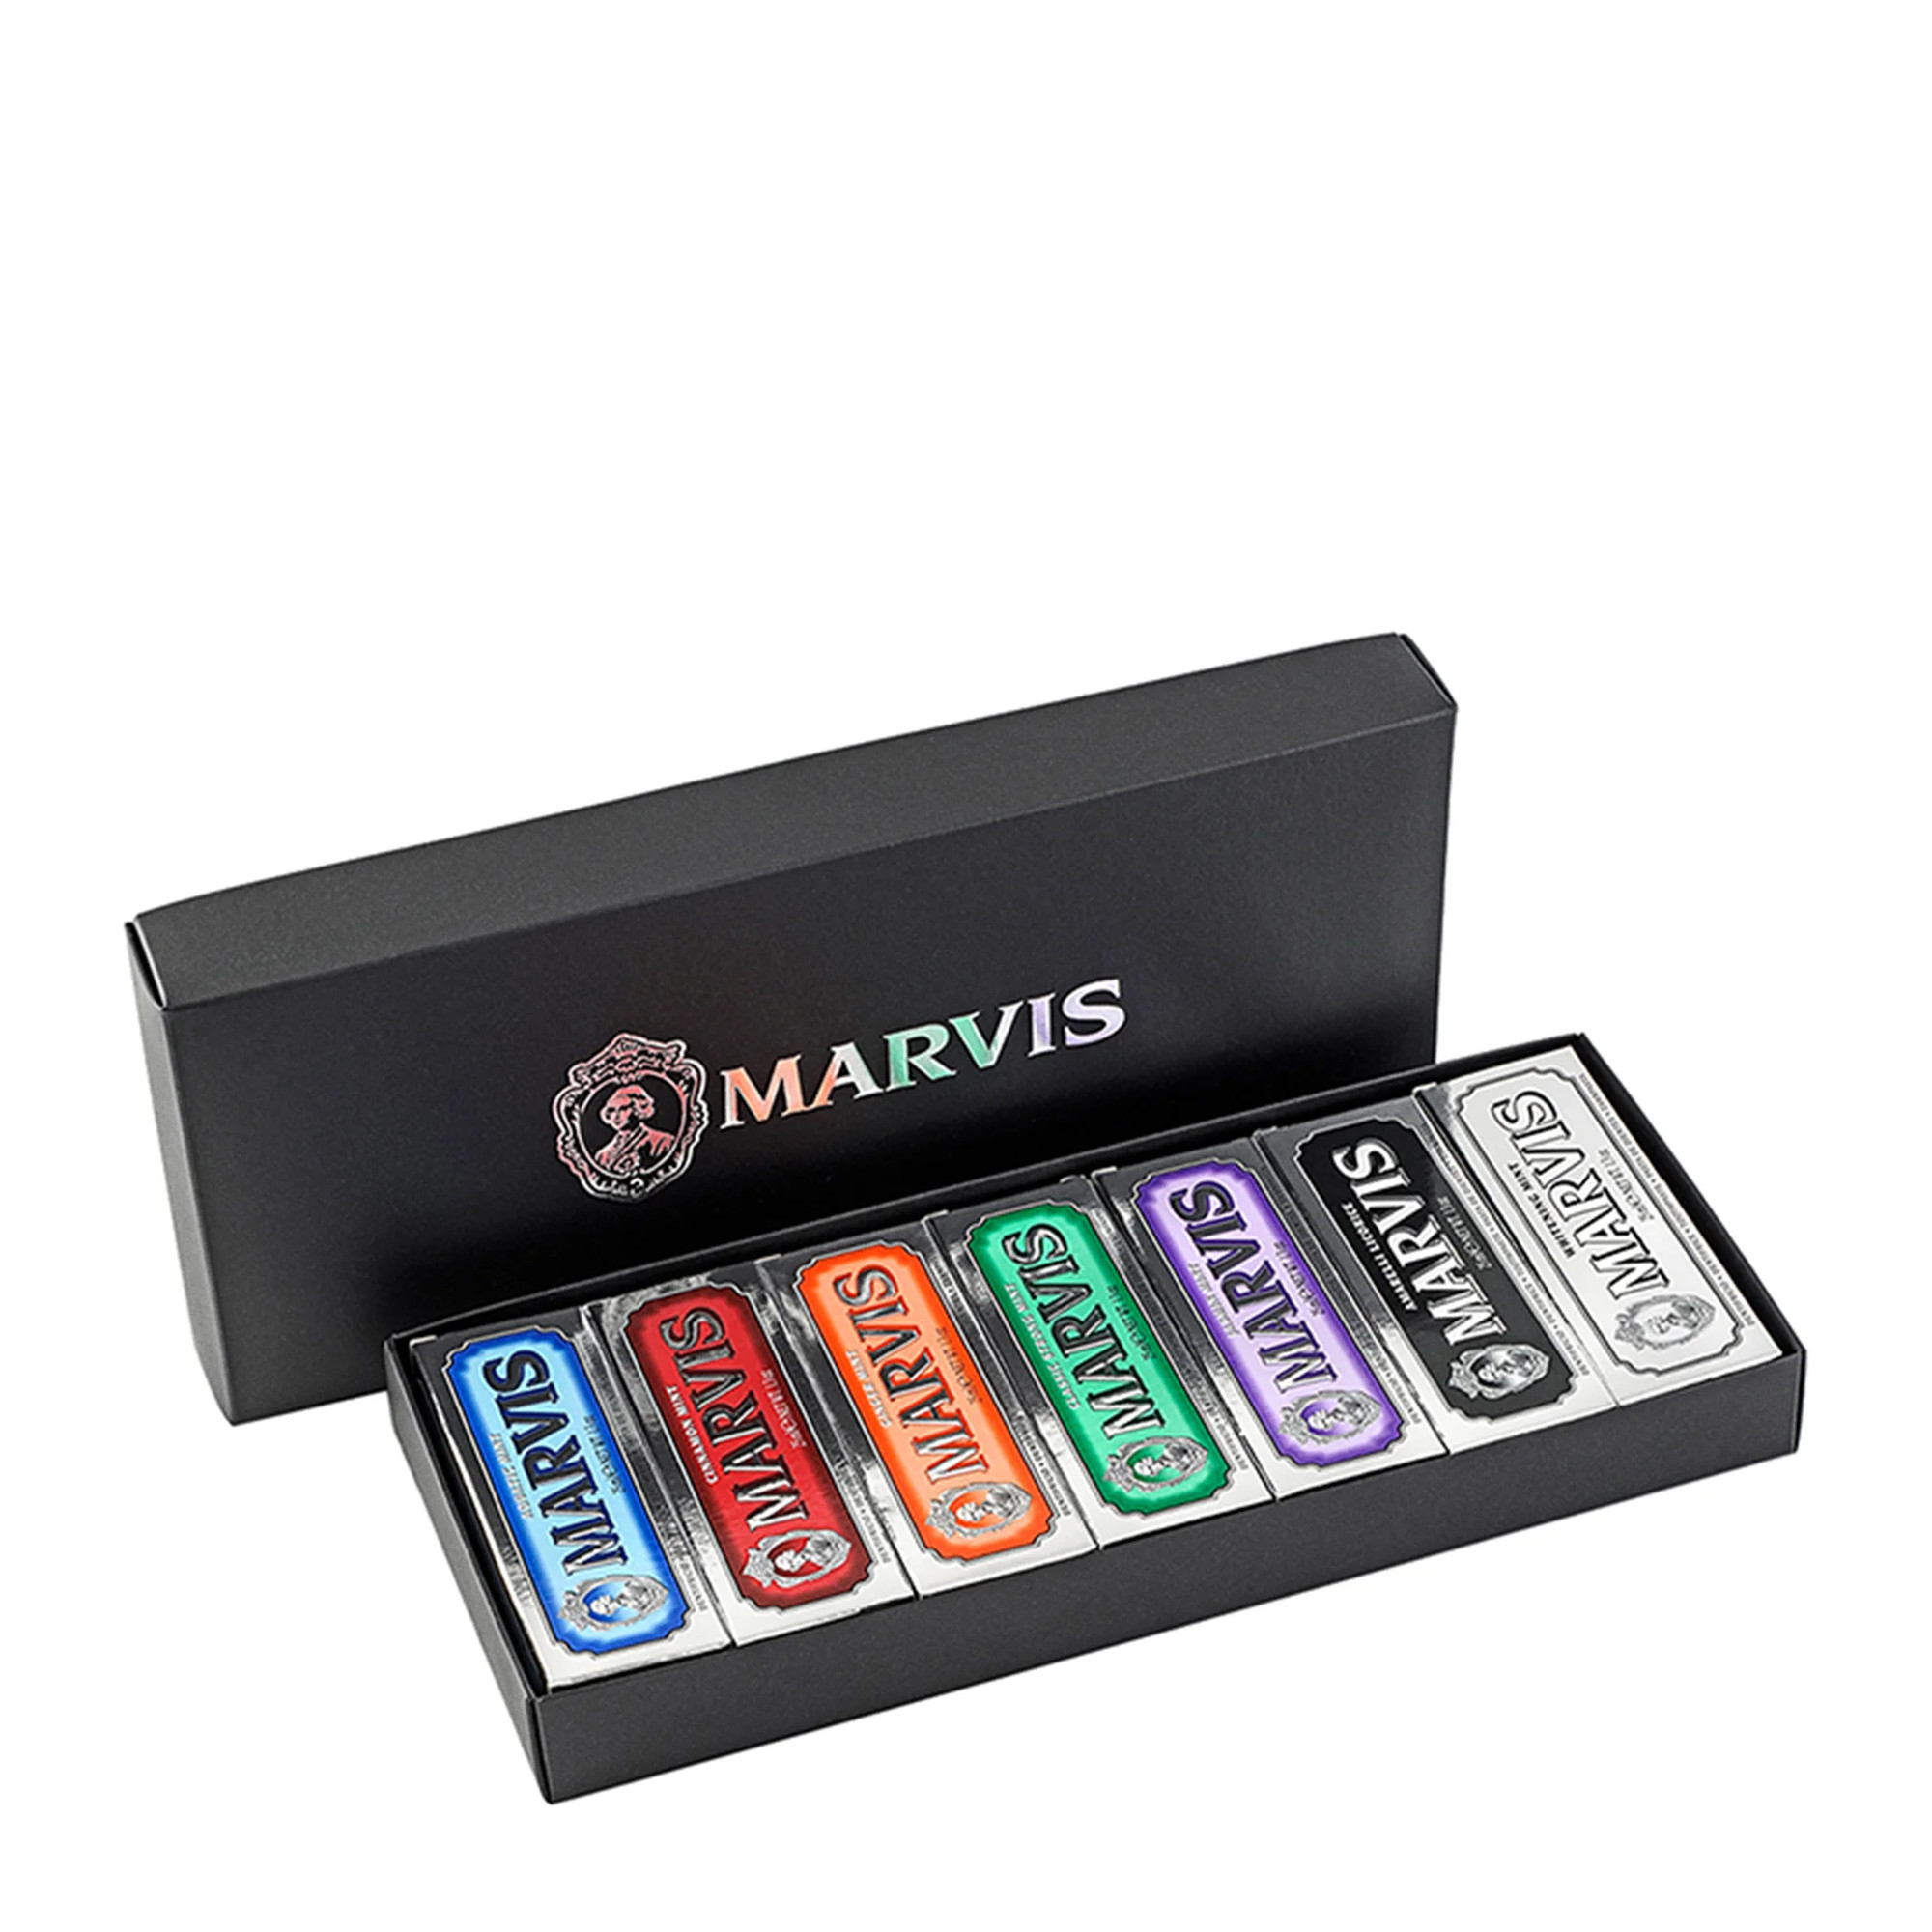 Marvis Набор из 7 видов паст в коробке